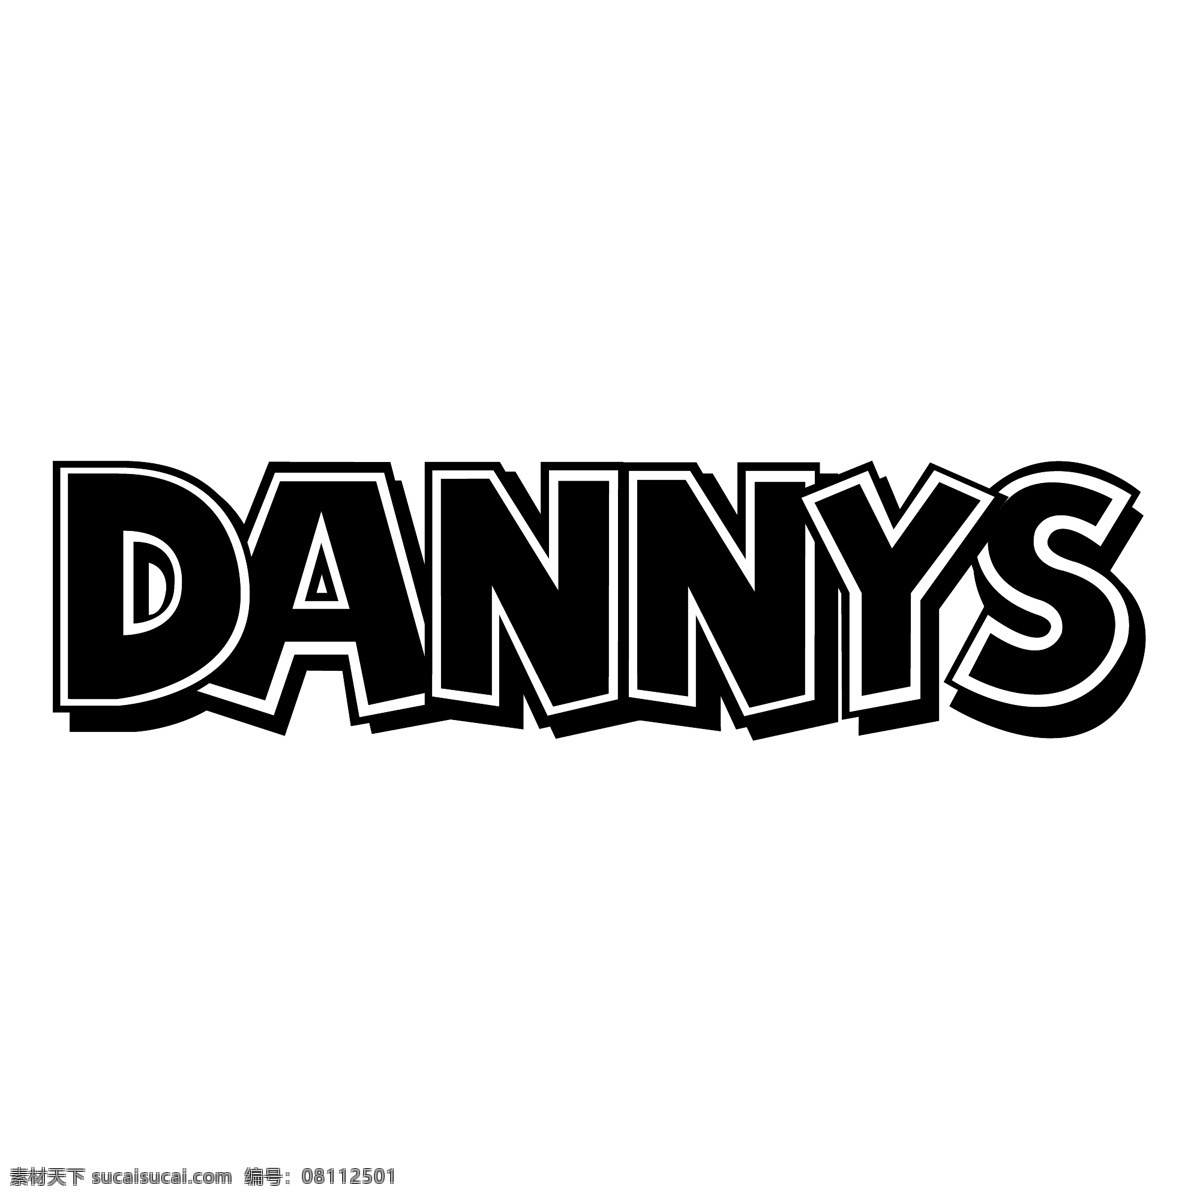 丹尼 音乐 免费 音乐下载 标志 标识 psd源文件 logo设计